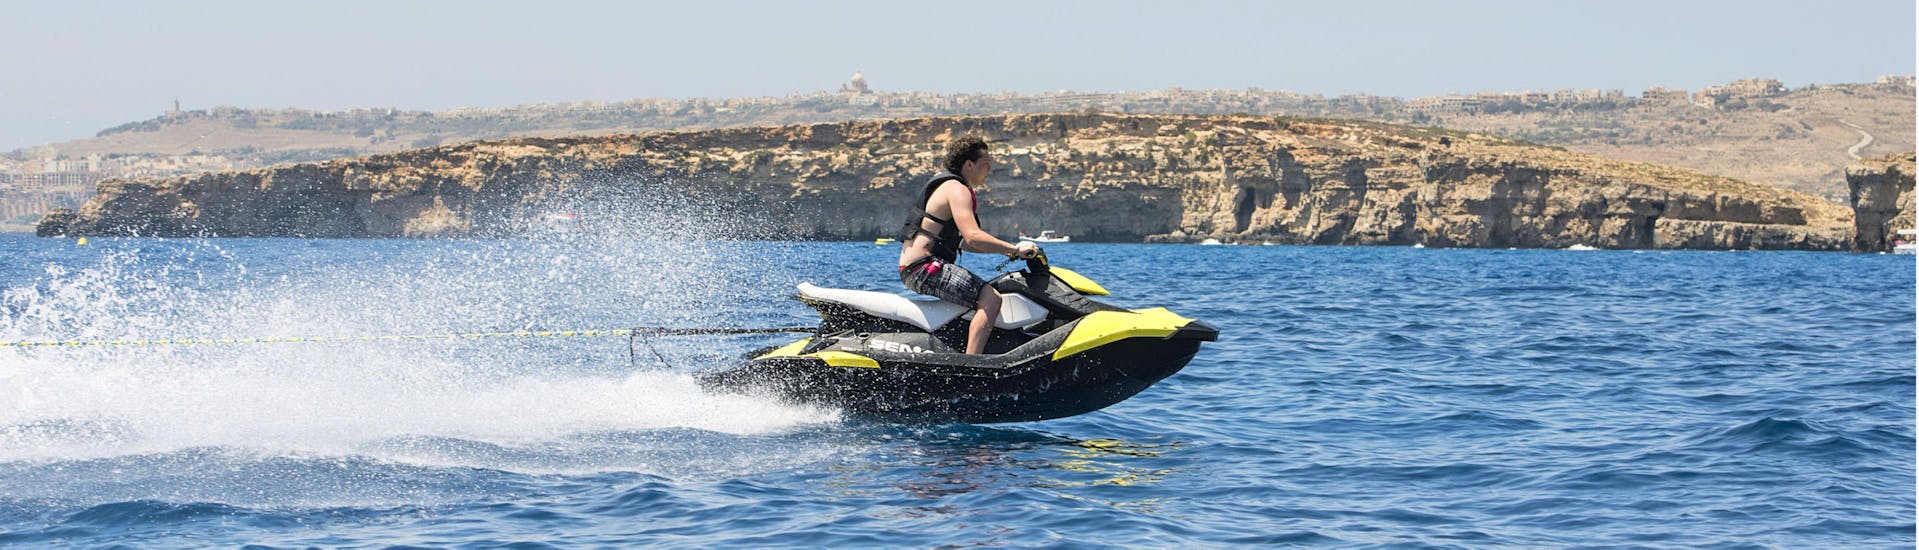 Randonnée en jet ski autour de Comino et du sud de Gozo.